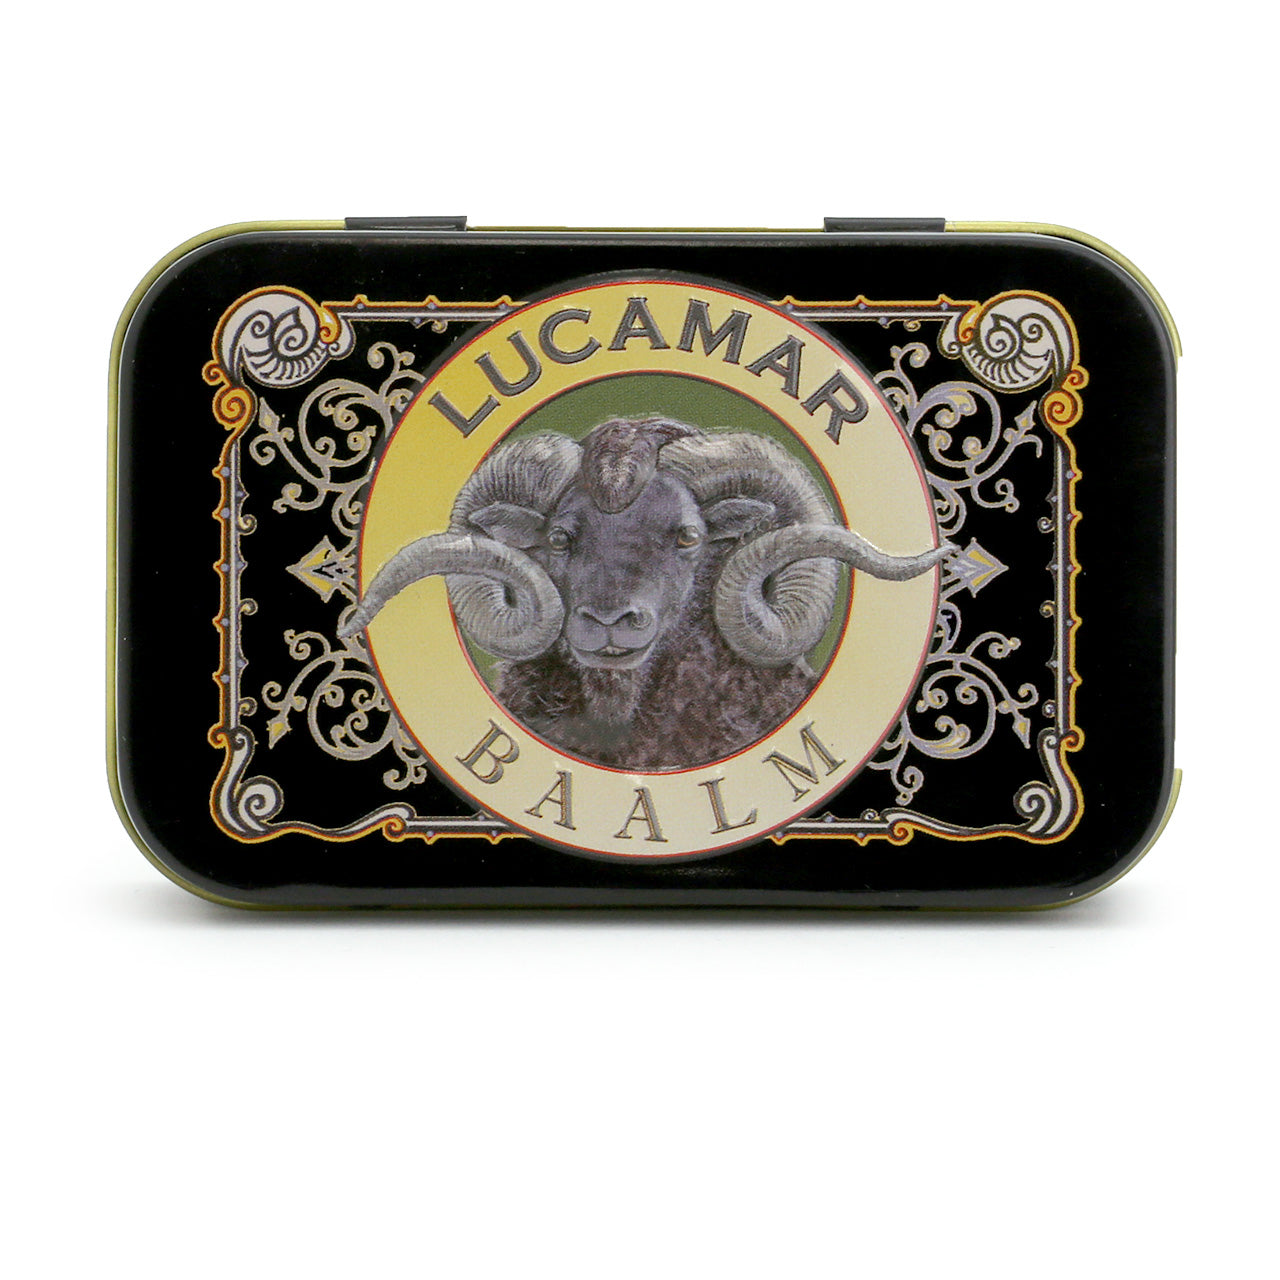 Lucamar Beard Baalm black tin 50g- top view